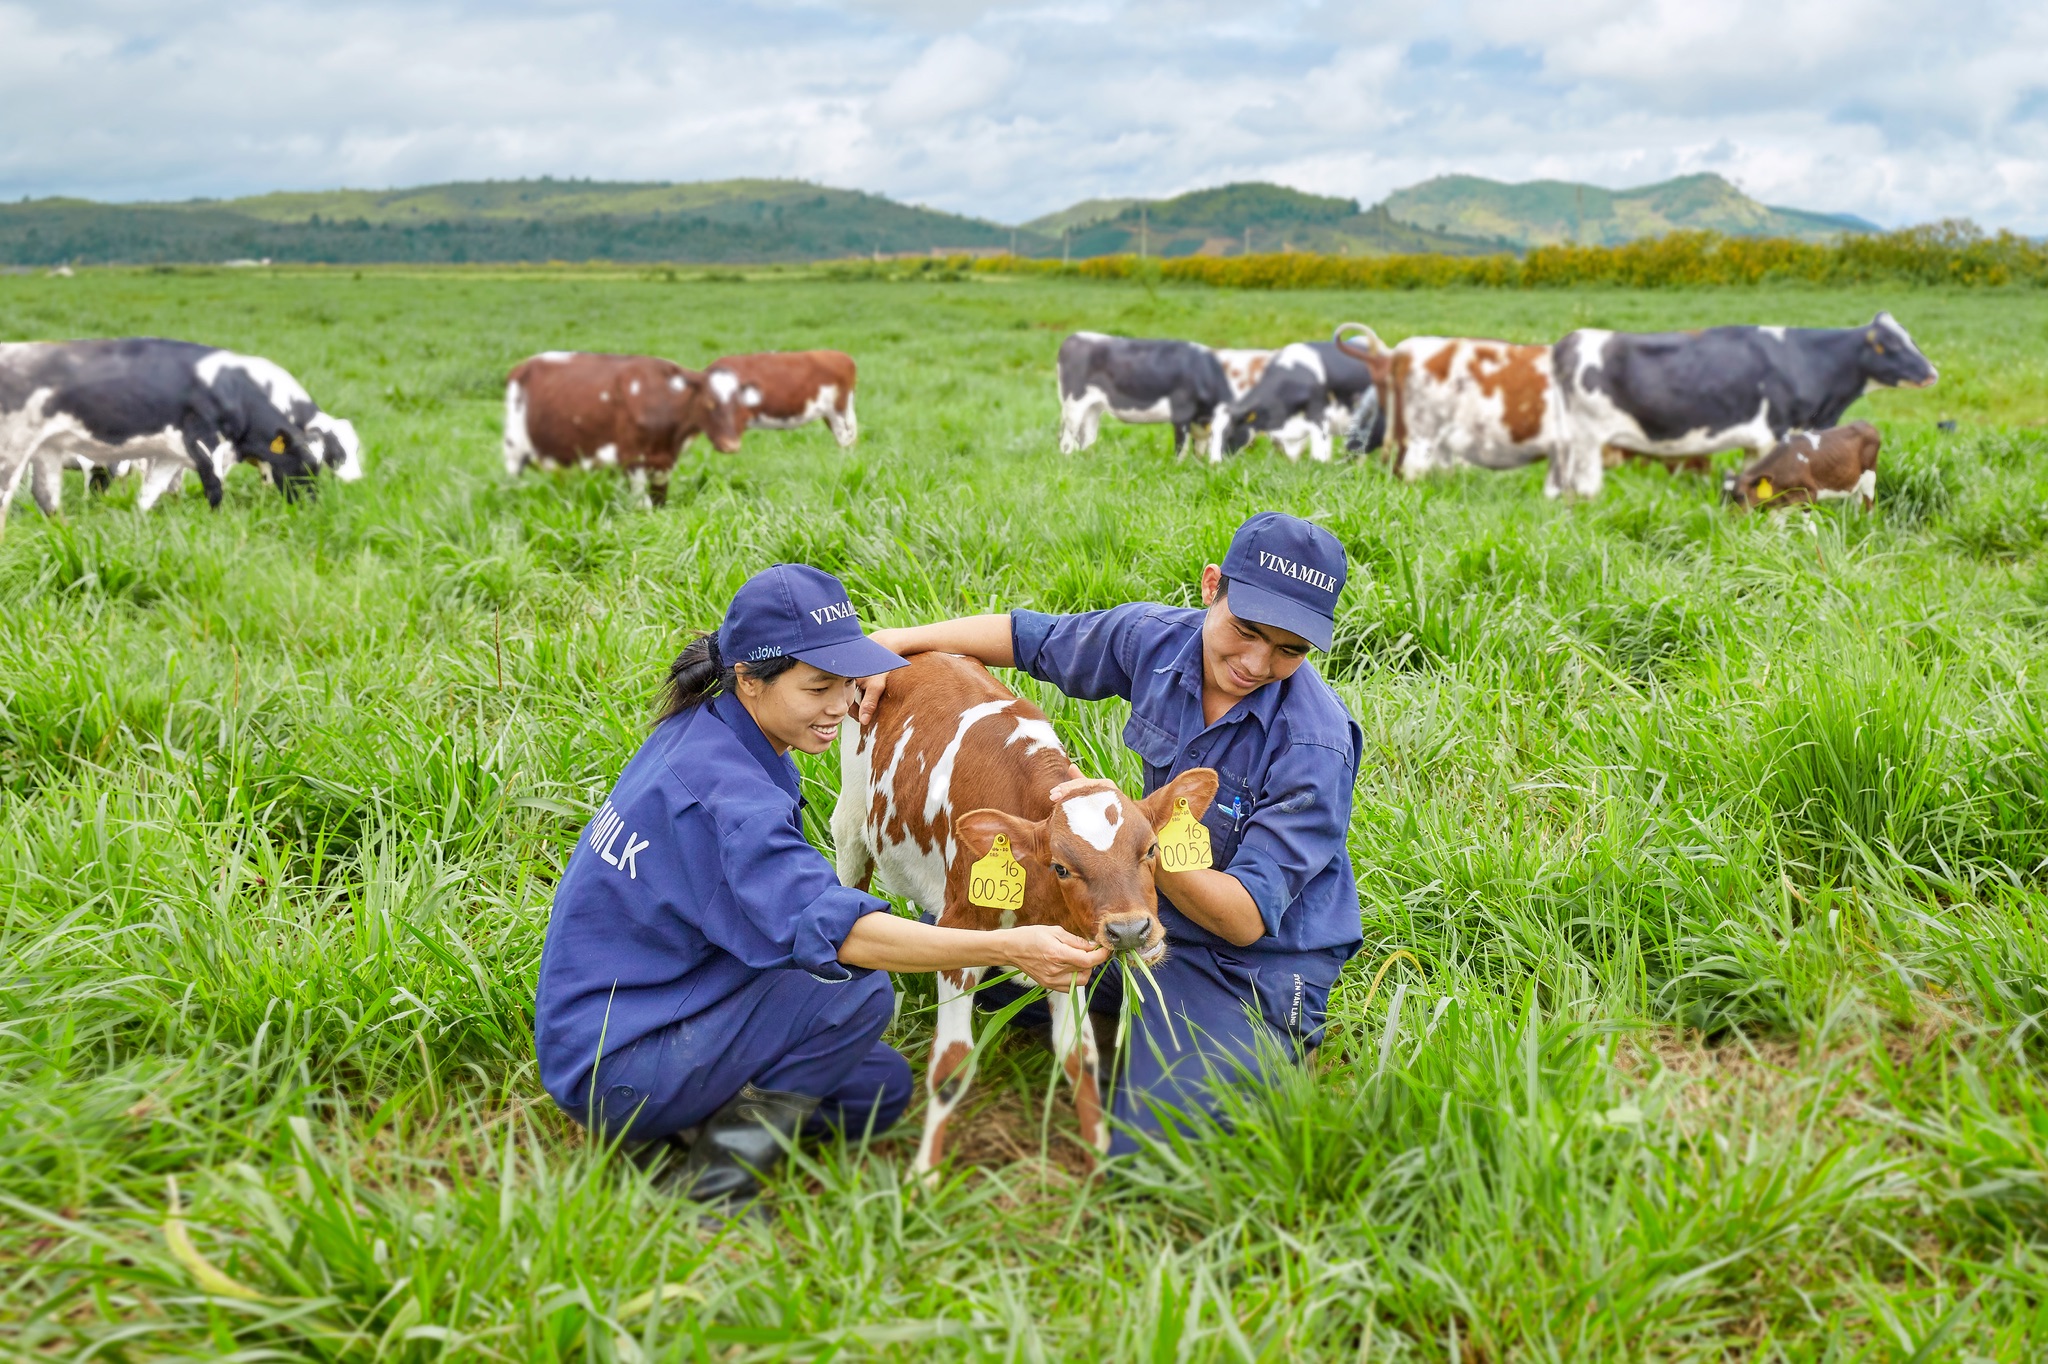 Môi trường làm việc tại trang trại thoáng đãng, trong lành cùng các “cô bò” thân thiện giúp nhân viên tại đây luôn có tinh thần làm việc hăng say